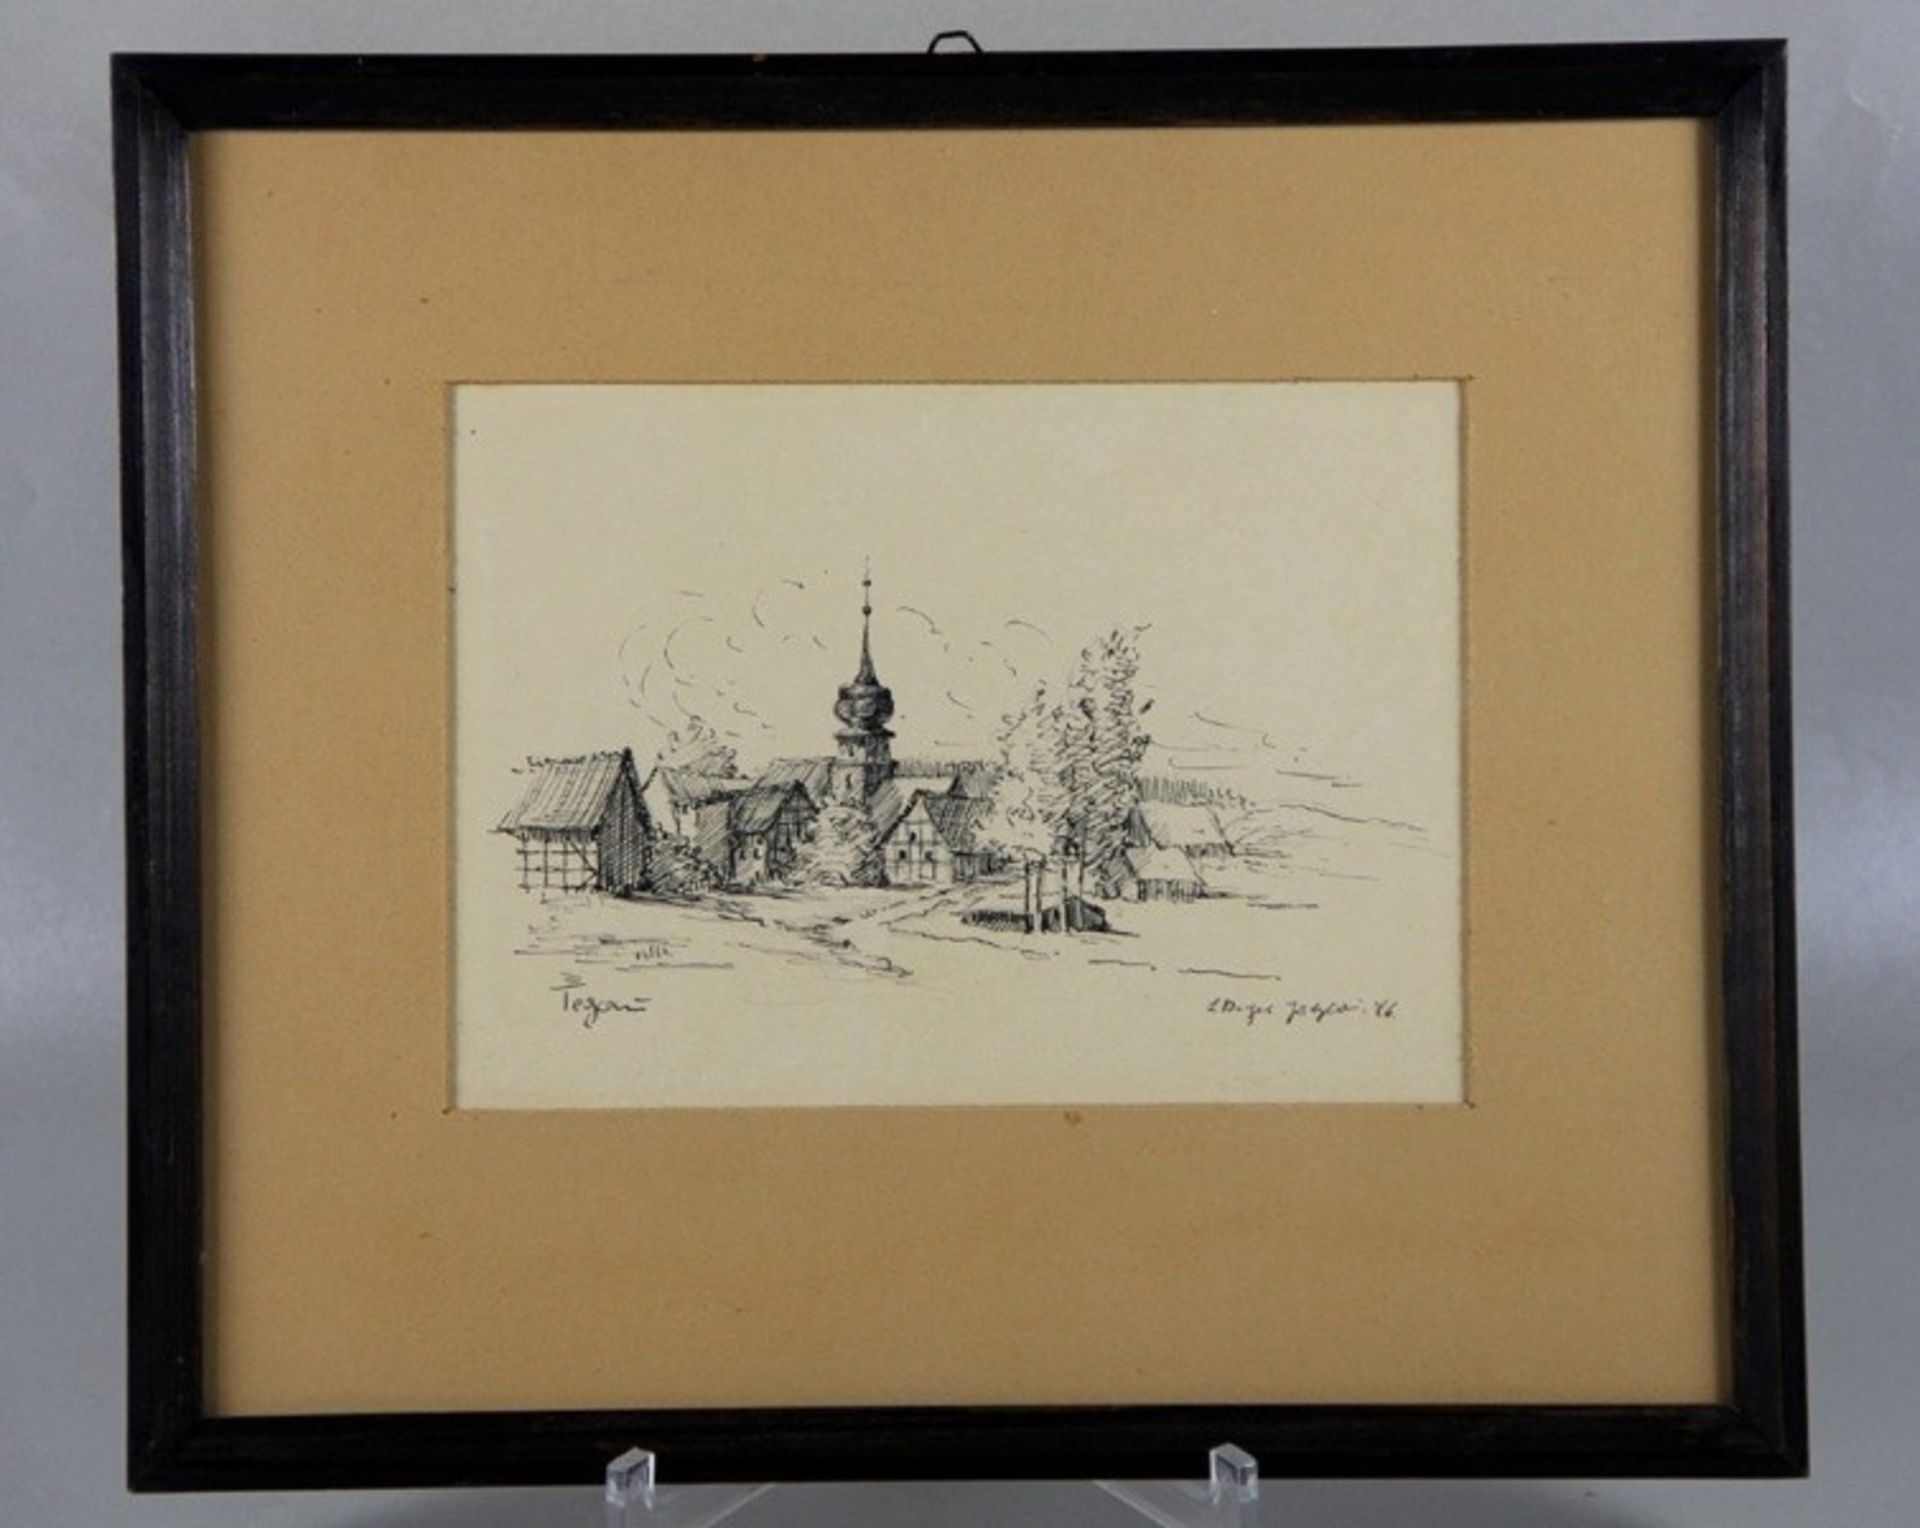 Zeichnung Tegau1946, Tusche/Bleistiftzeichung, Tegau, Blick auf die Kirche mit umstehenden